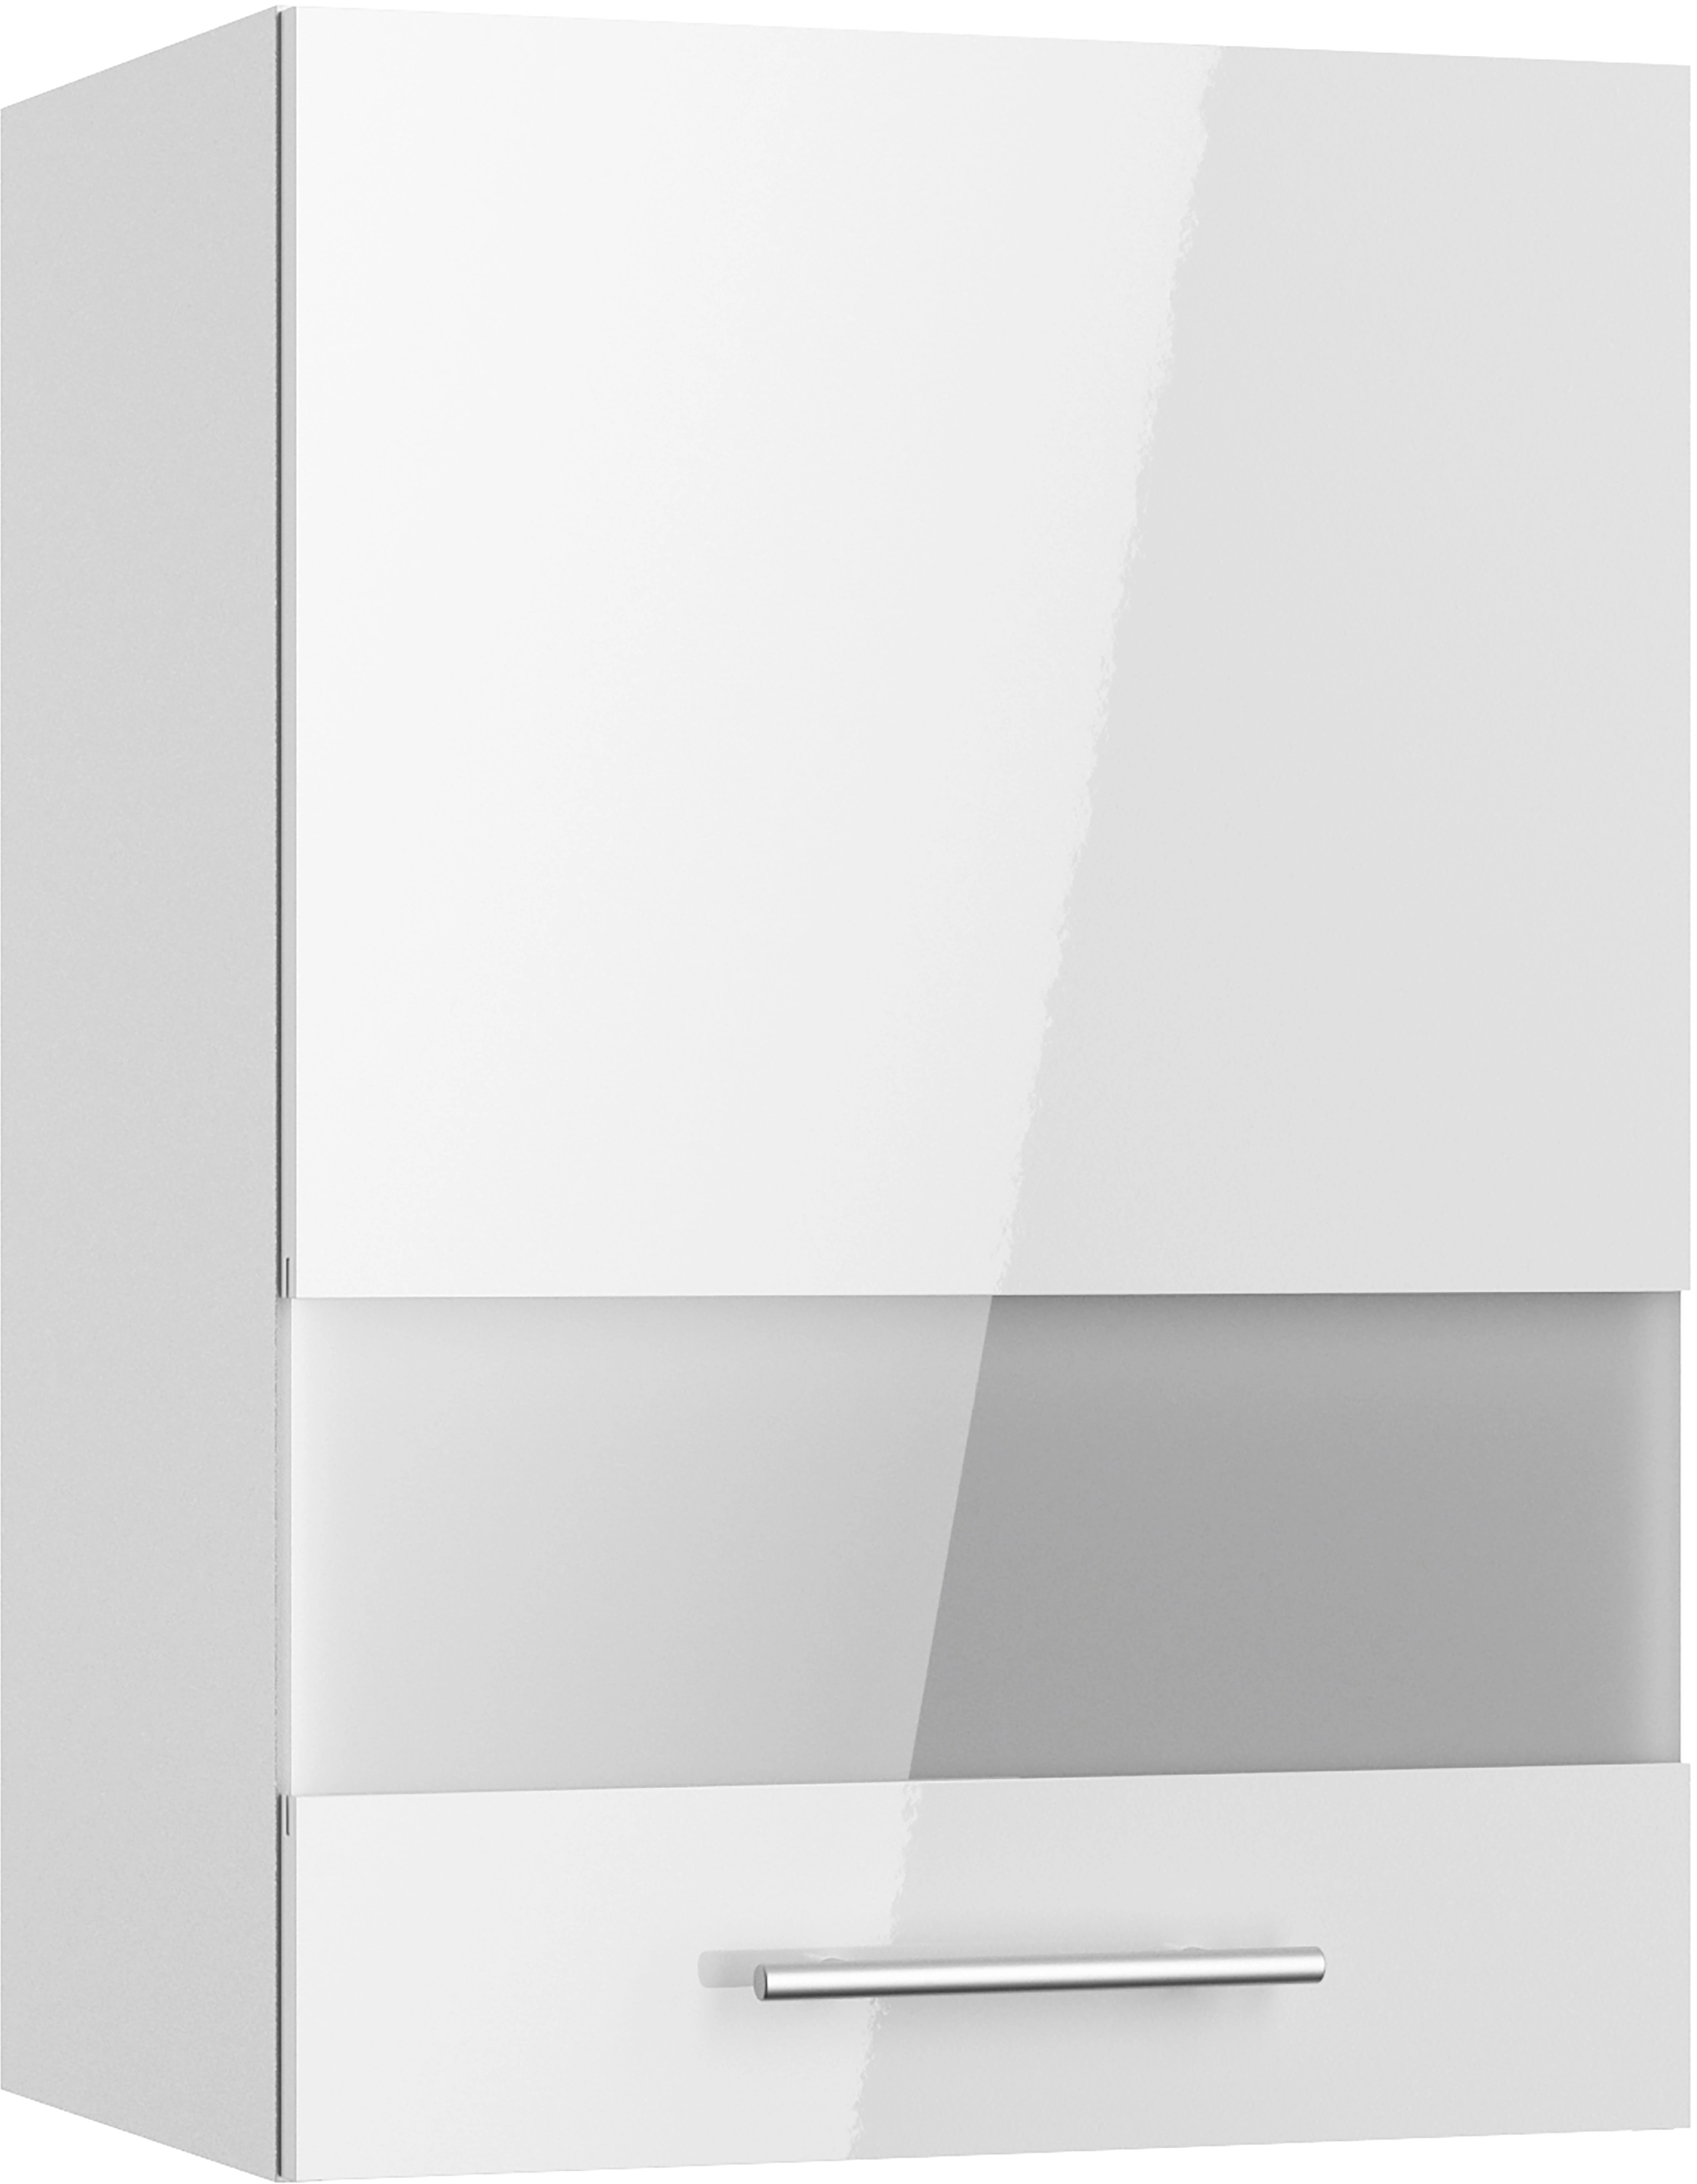 Optifit Oberschrank mit Glassegment Rurik986 50 cm x 70,4 cm x 34,9 cm Weiß  kaufen bei OBI